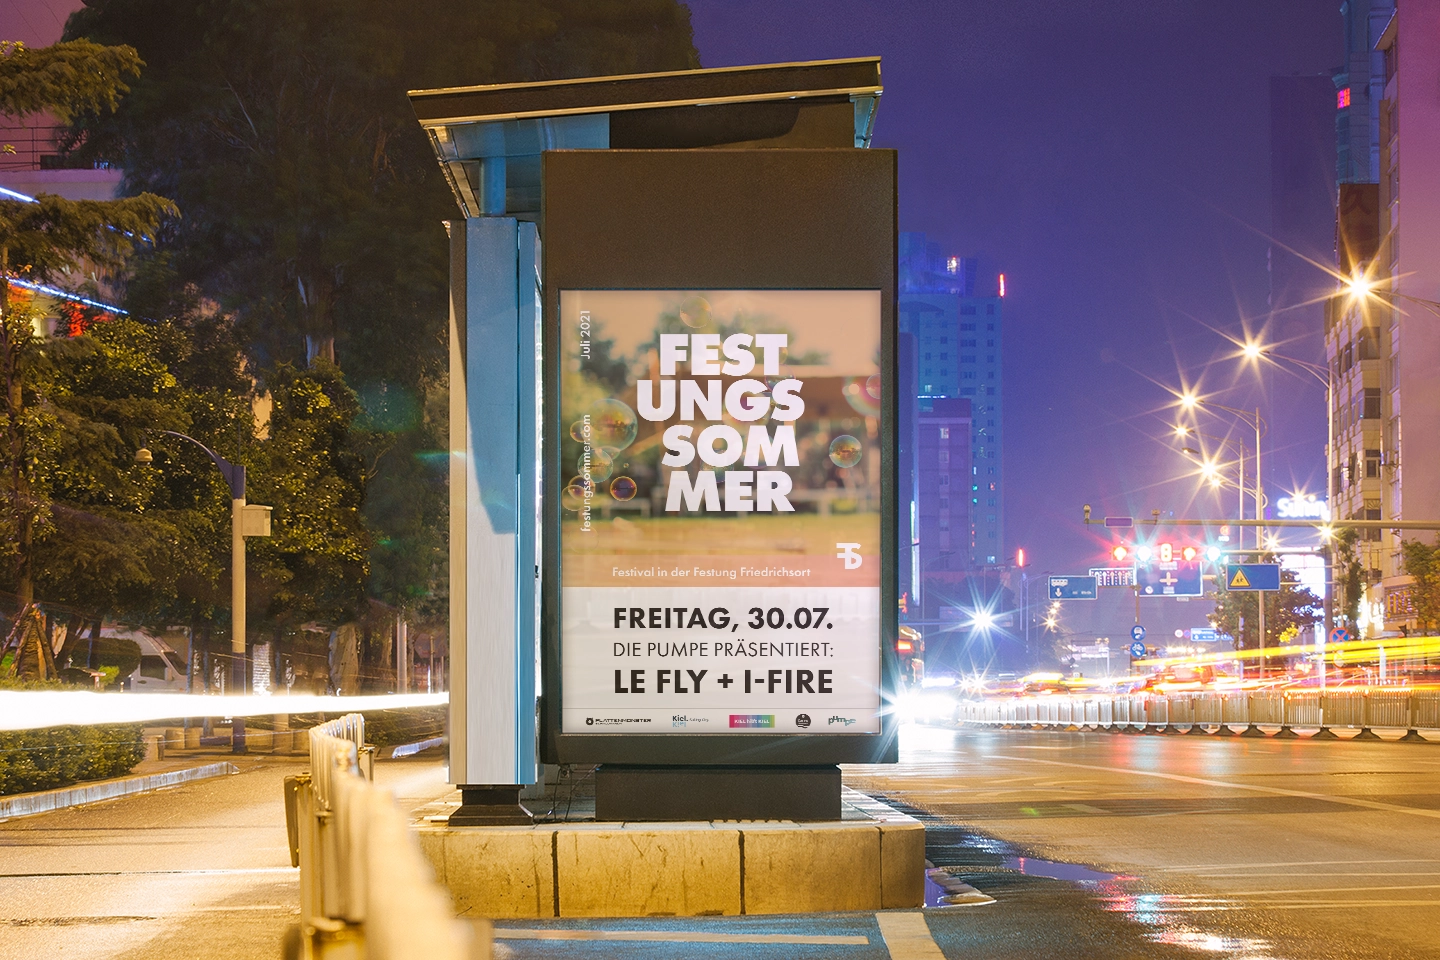 Plakat des Festungssommer Events an einer beleuchteten Straße bei Nacht im Rahmen des Corporate-Design für Festivals